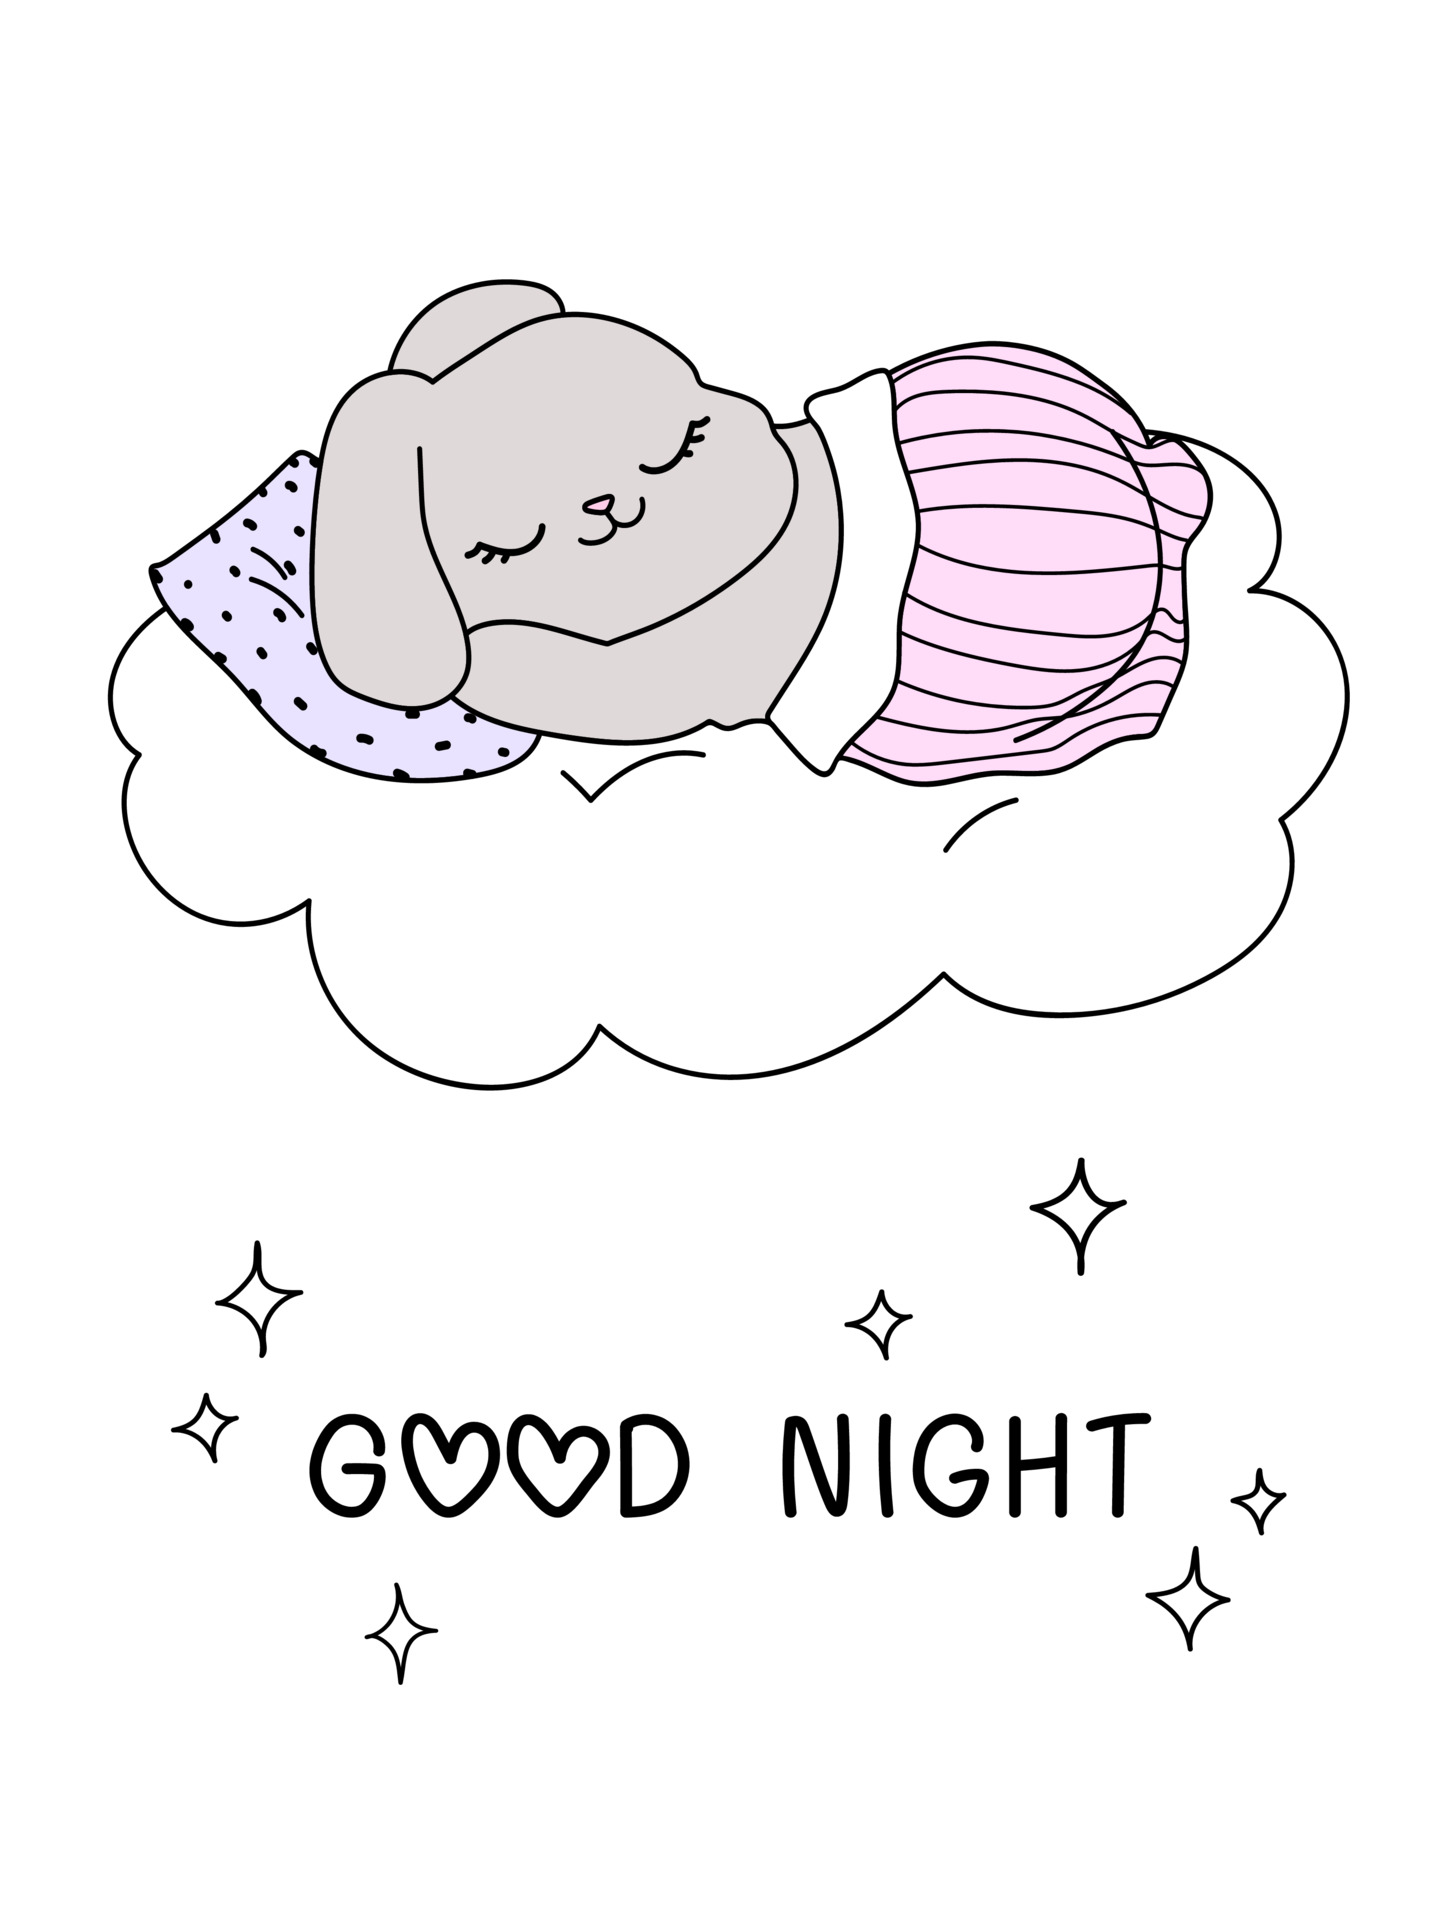 Cute cartoon rabbit sleeping cloud Good night bunny text